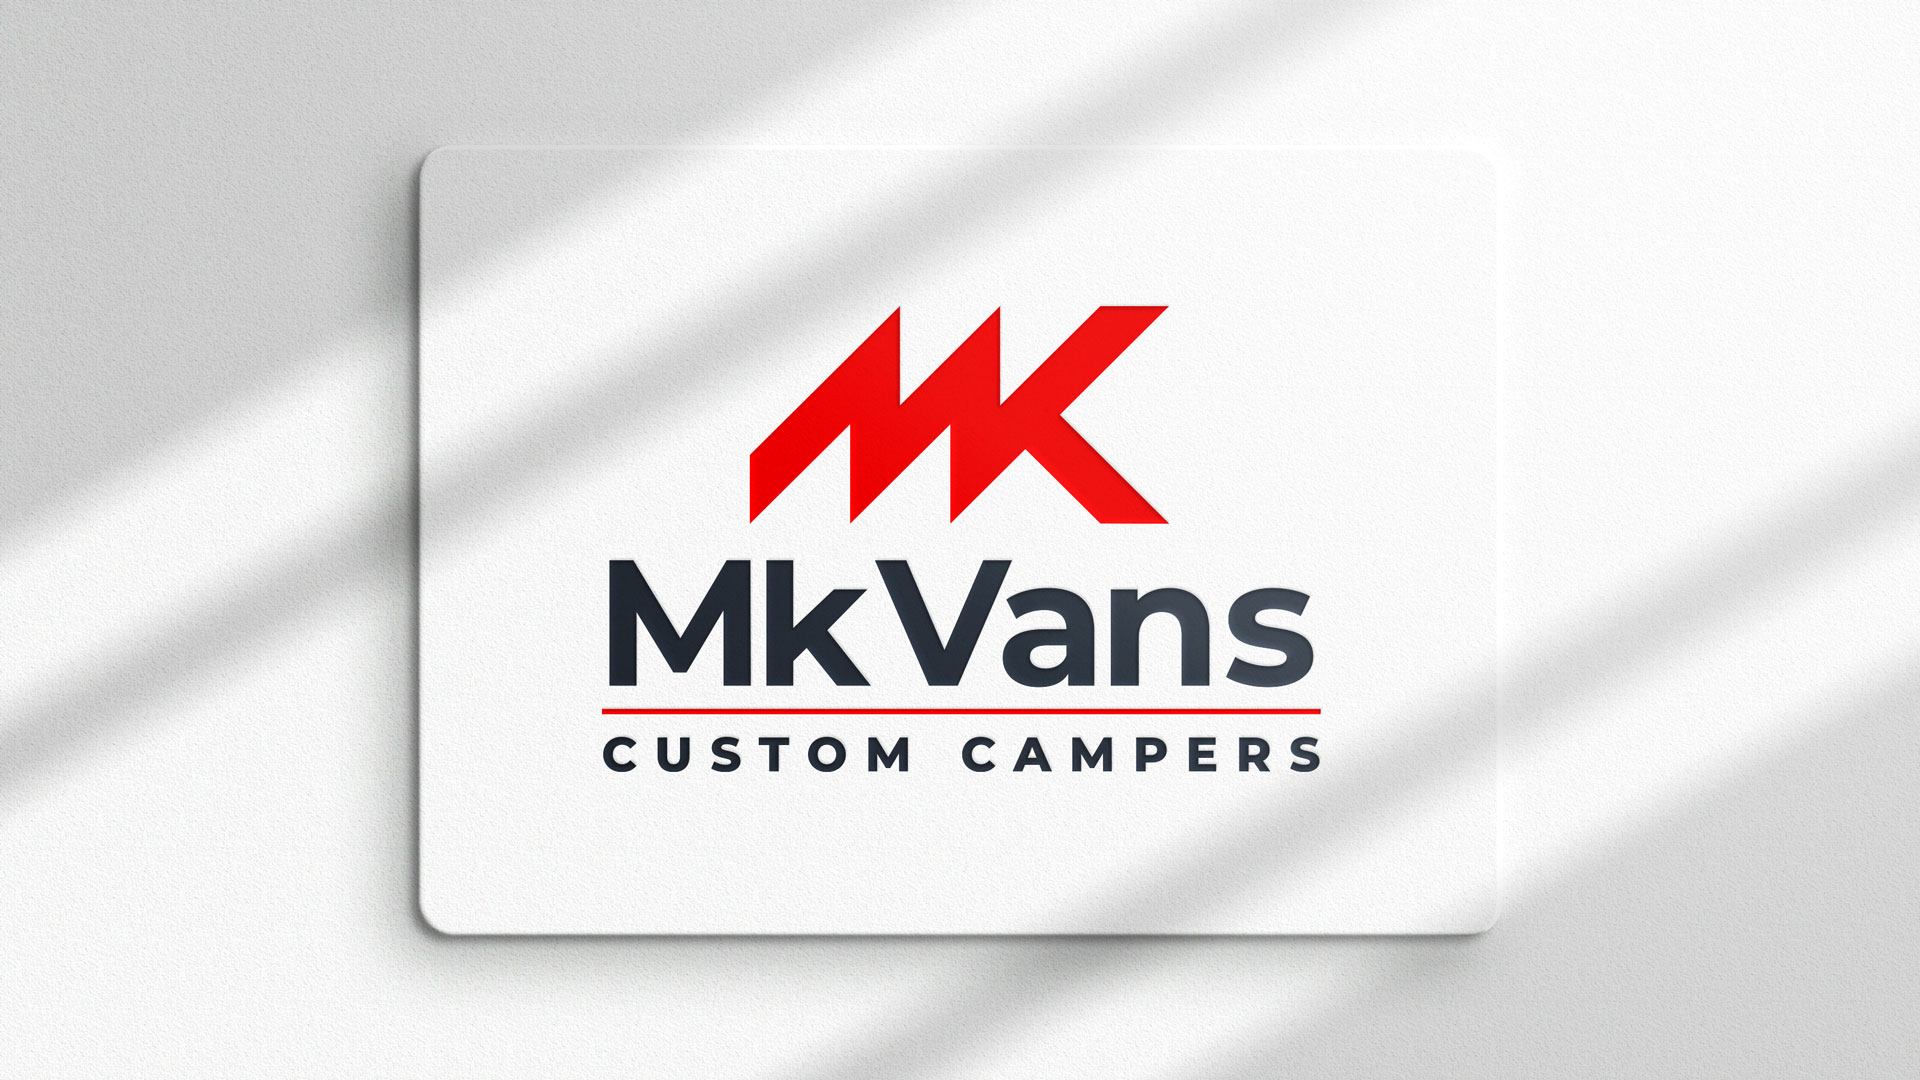 MK Vans